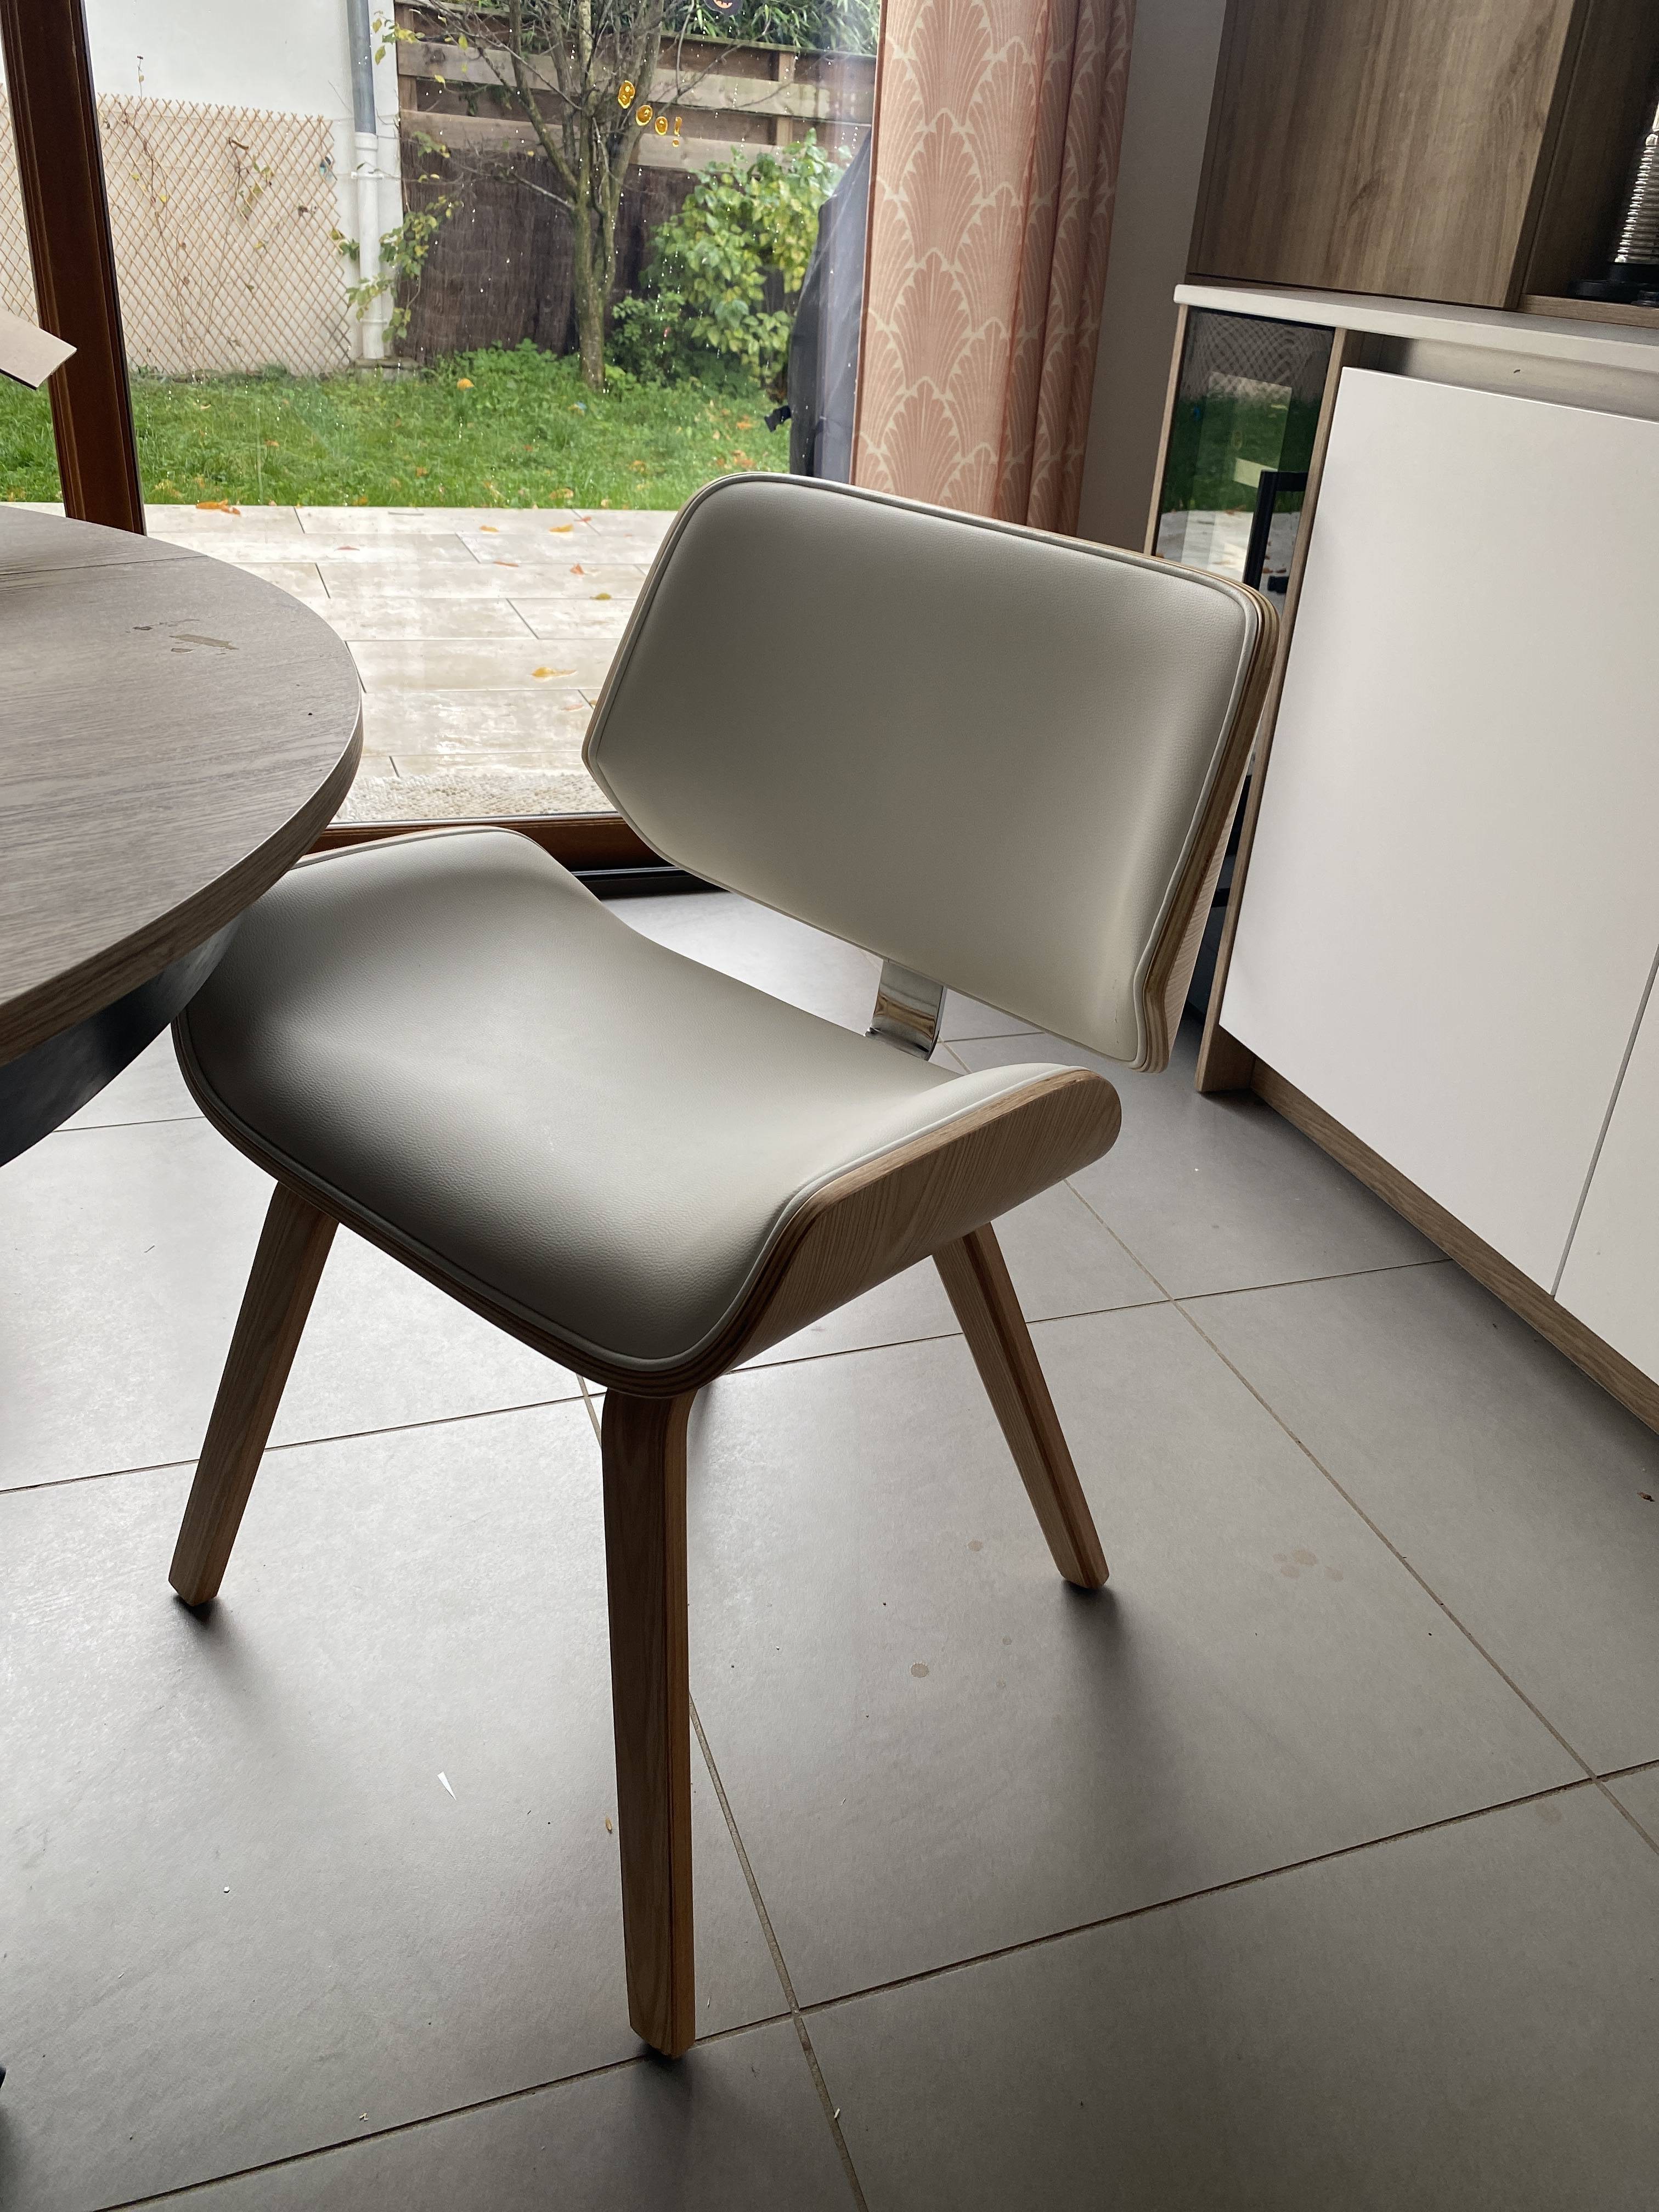 Chaise design blanc et bois clair RUBBENS - Miliboo